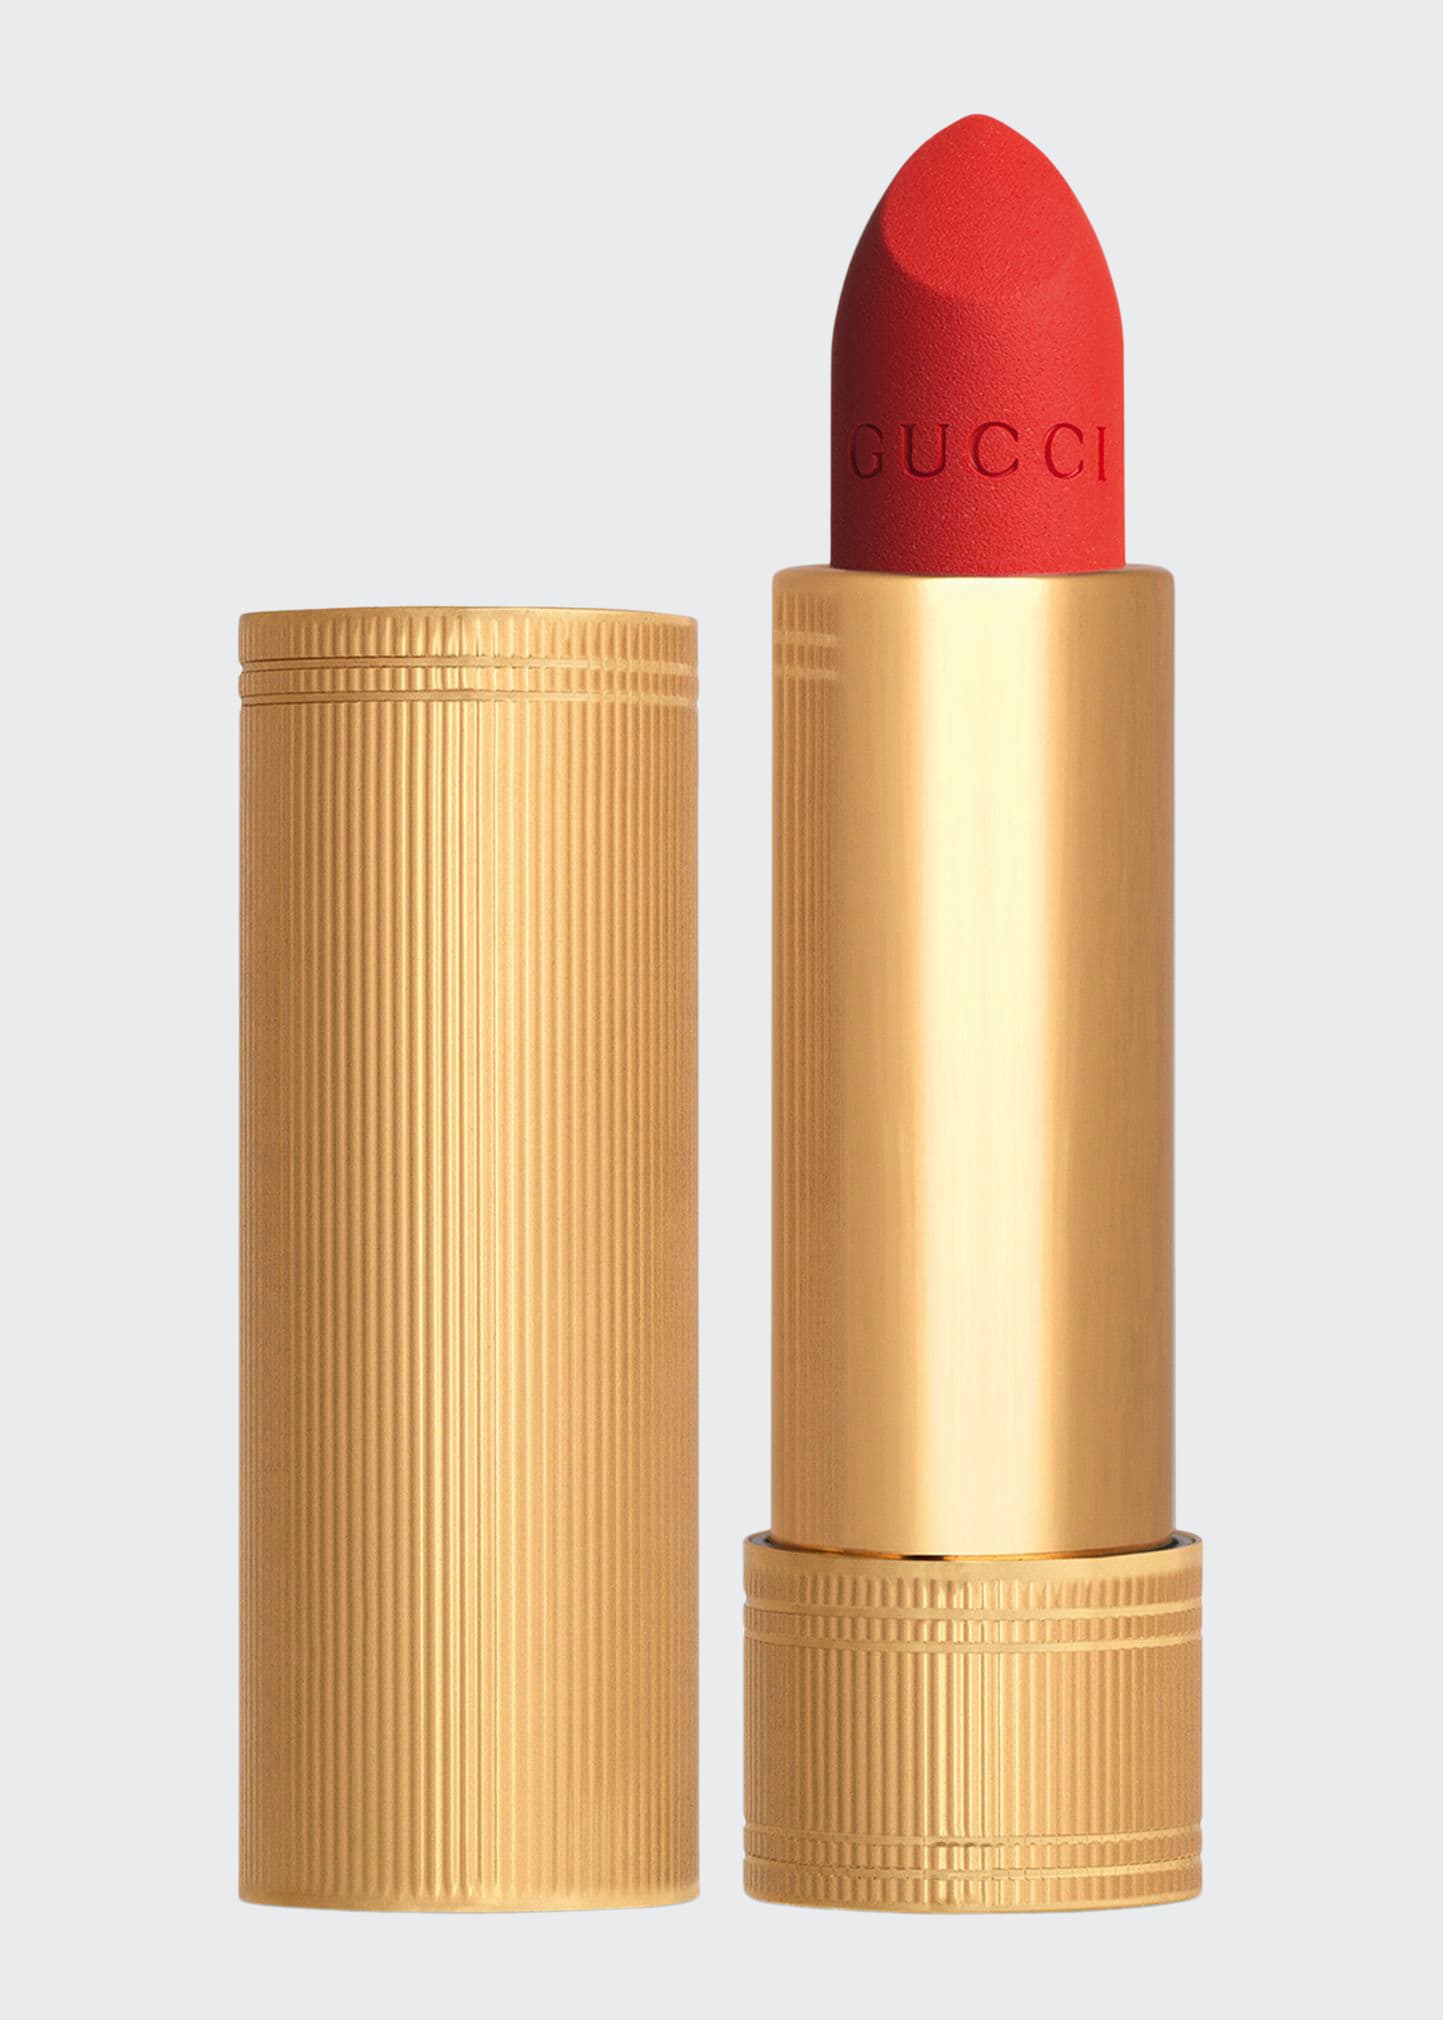 Gucci Rouge A Levres Matte Lipstick In 302 Agatha Orange